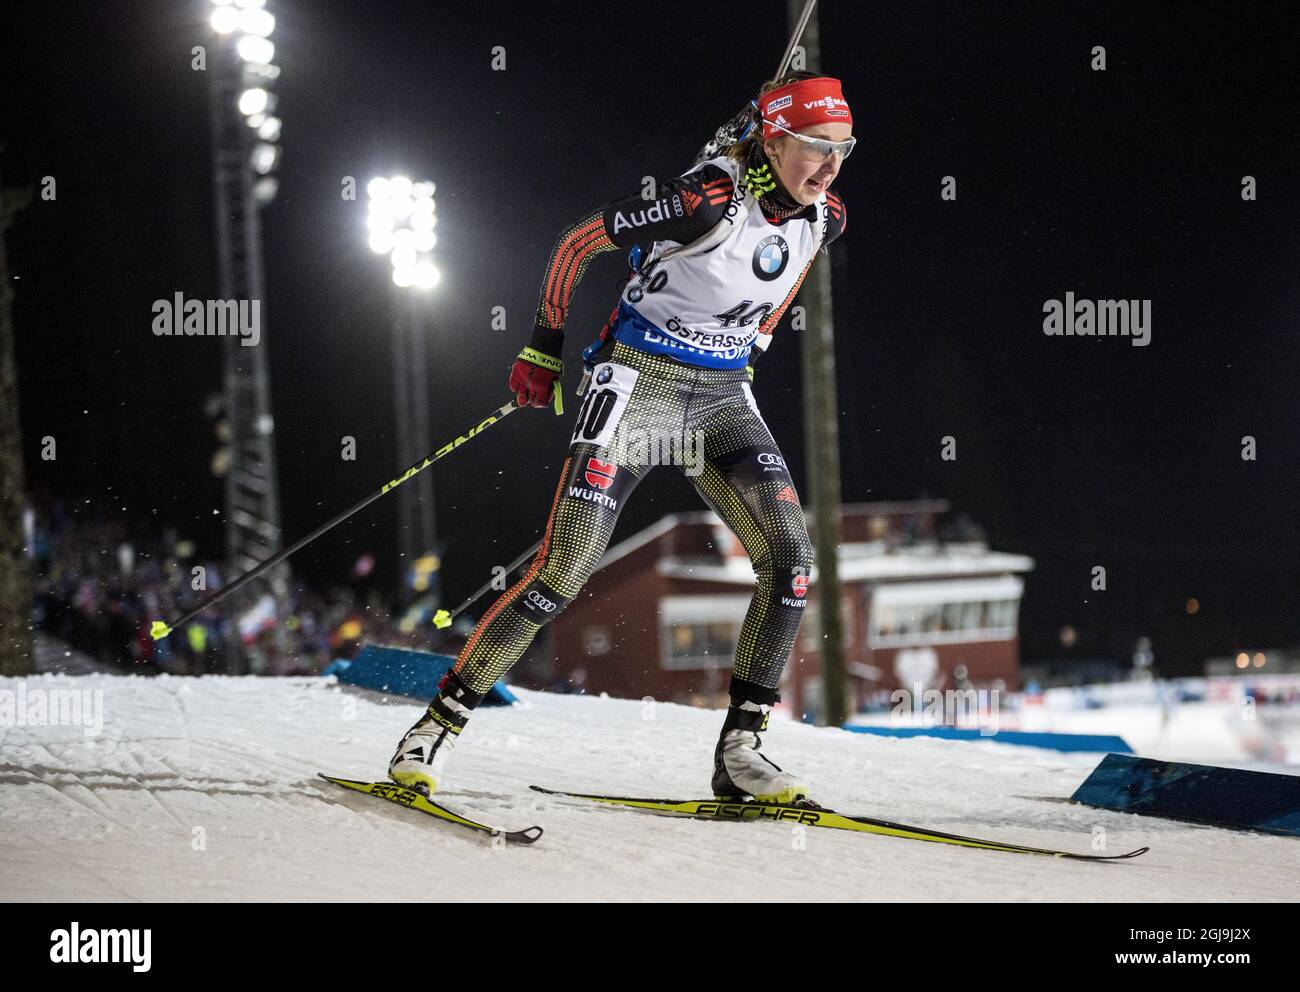 Quarto posto Franziska Preuss di Germania in azione durante la gara femminile di sprint 7.5km alla IBU Biathlon World Cup di Ostersund, Svezia, il 5 dicembre 2015. Foto: Christine Olsson / TT / code 10430 Foto Stock